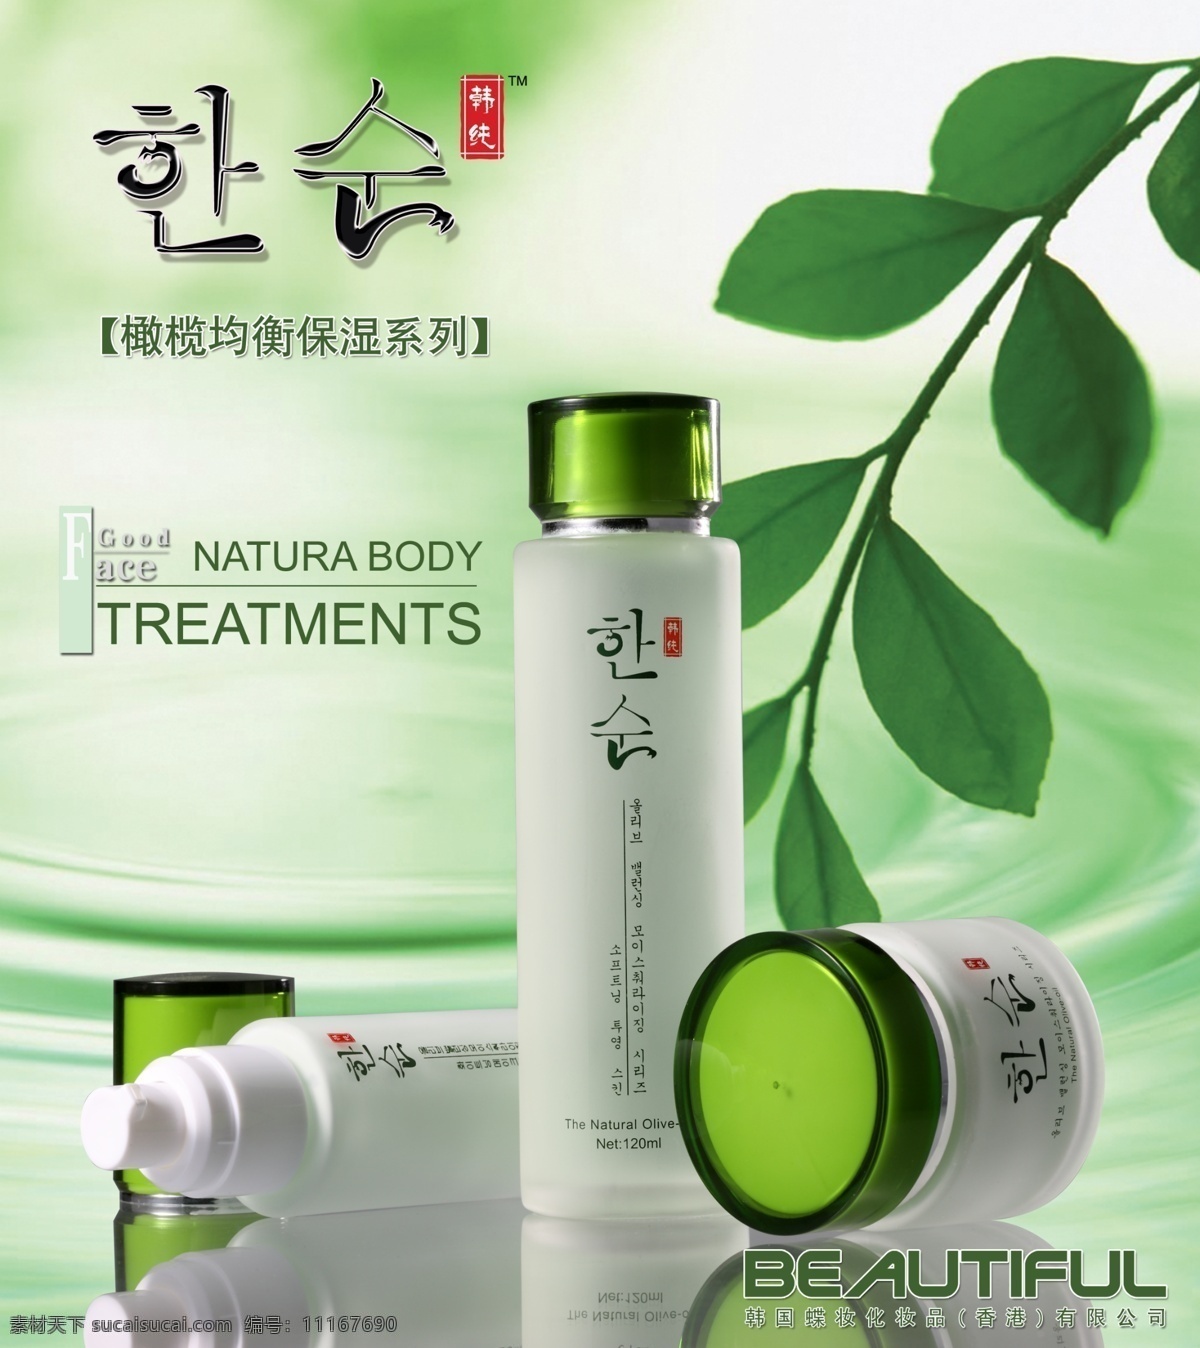 高档 化妆品 美容 护肤产品 海报 模版下载 绿色 绿叶 养生 产品 水波 绿色水纹 韩国 广告设计模板 源文件